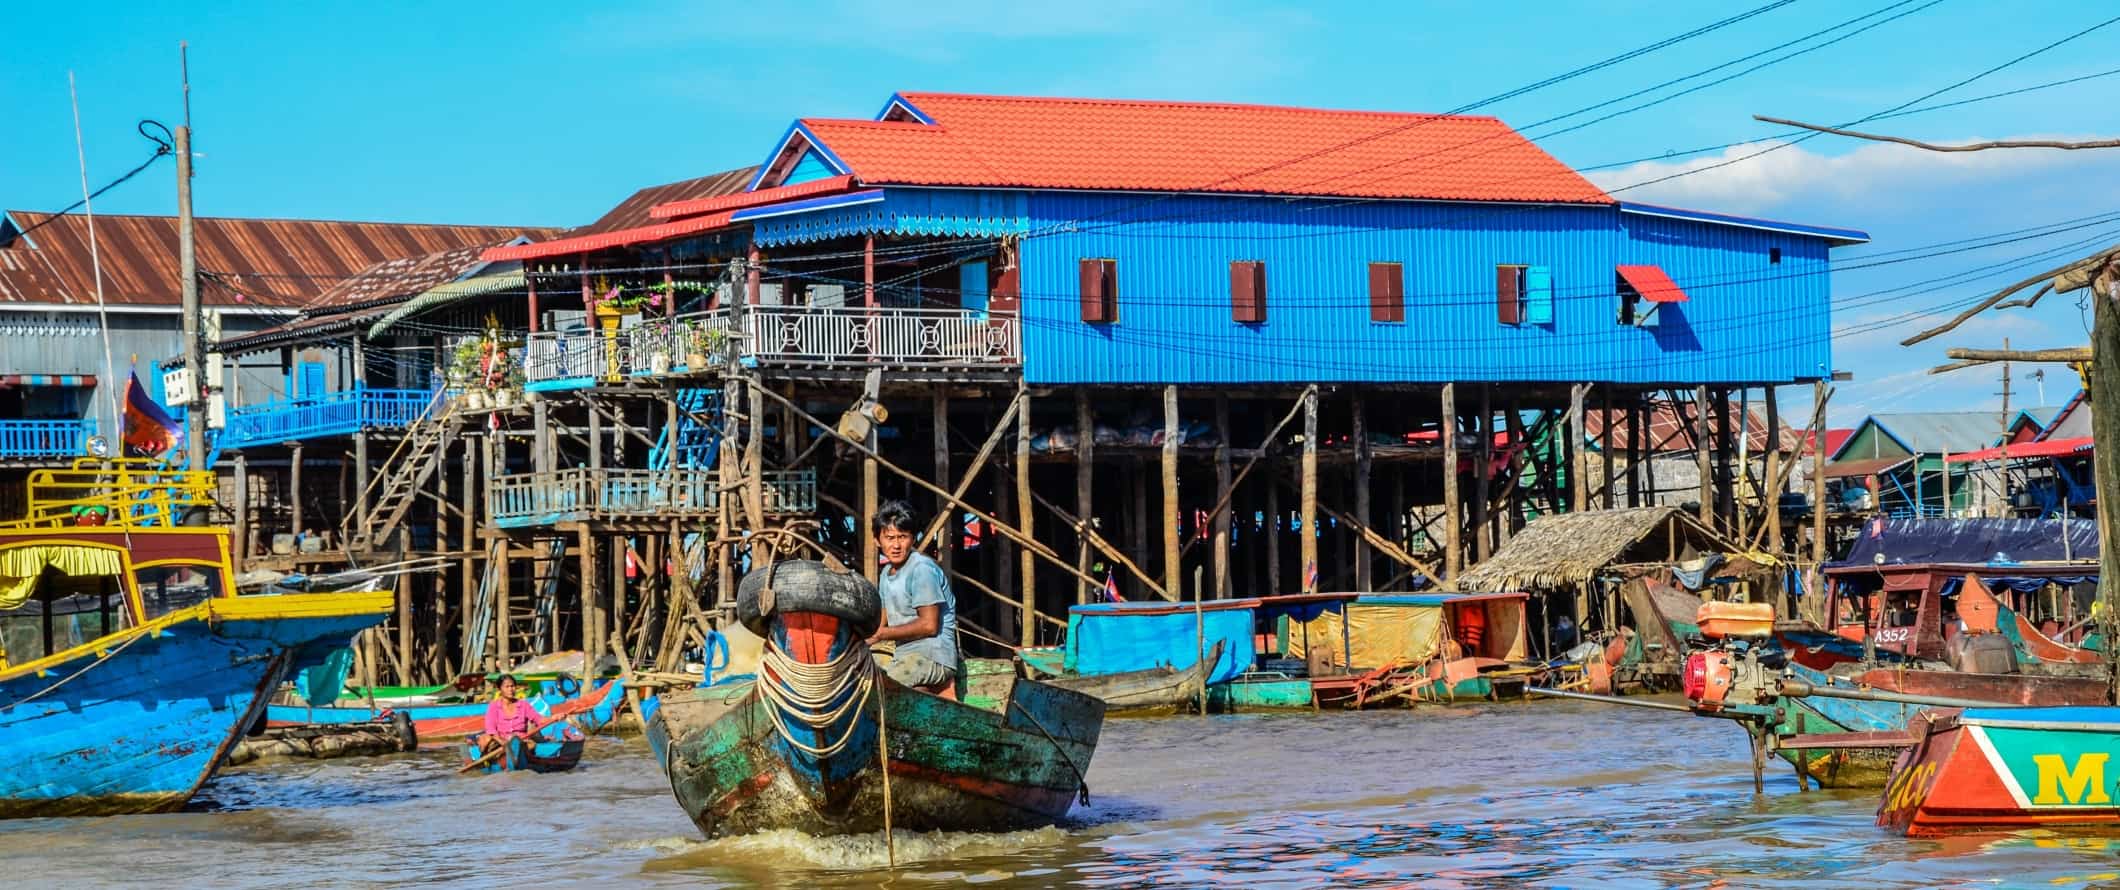 Um homem navega em um barco ao longo de um canal em frente a palafitas pintadas em cores vivas em Tonle Sap, Camboja.